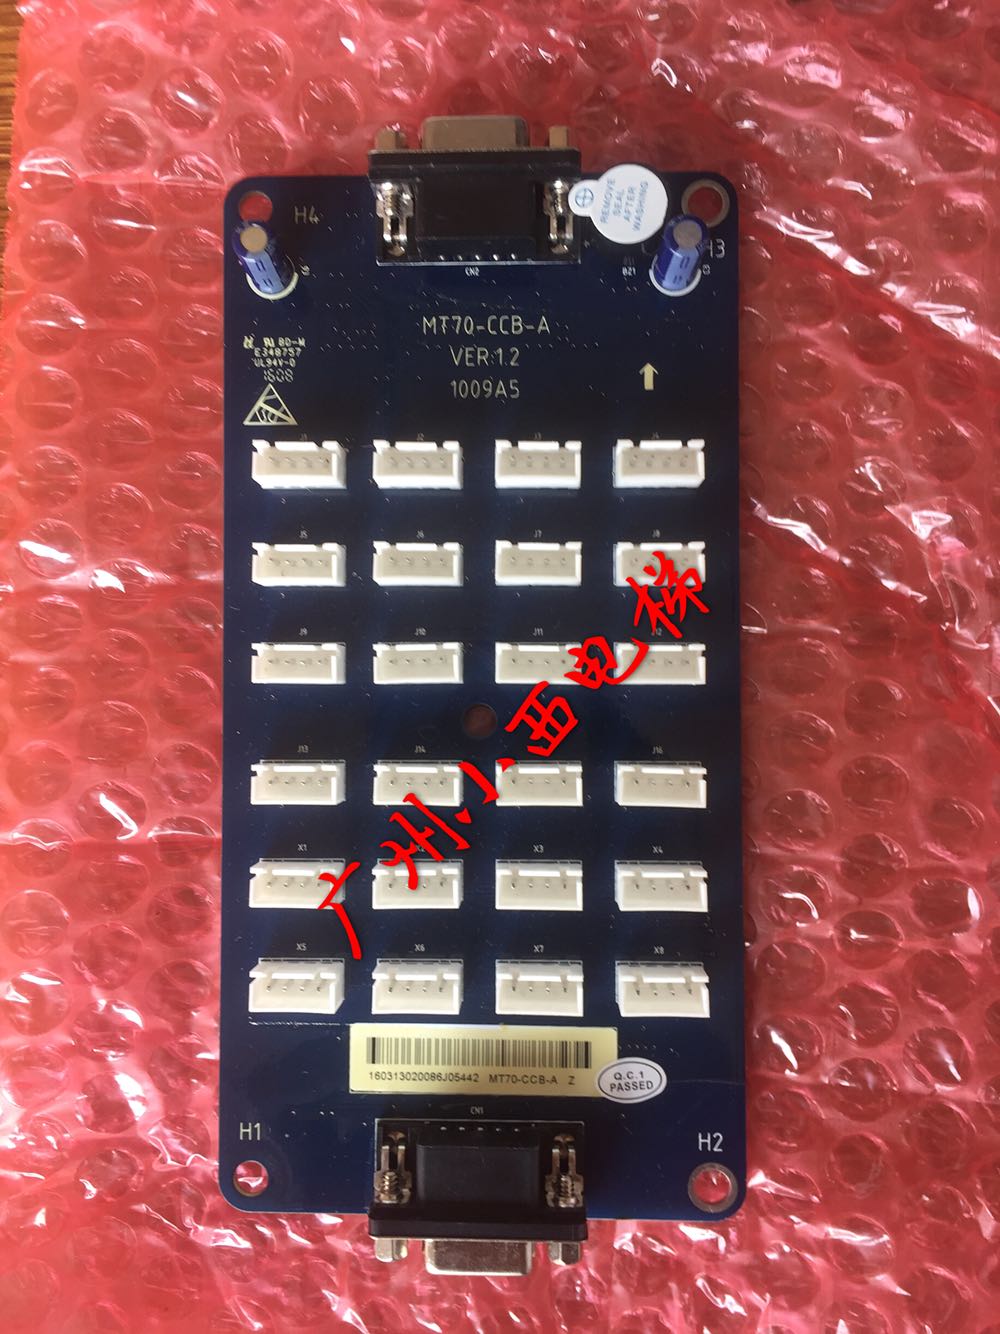 全新原厂海浦蒙特电梯控制系统轿厢指令板MT70-CCB-A 轿厢通讯板